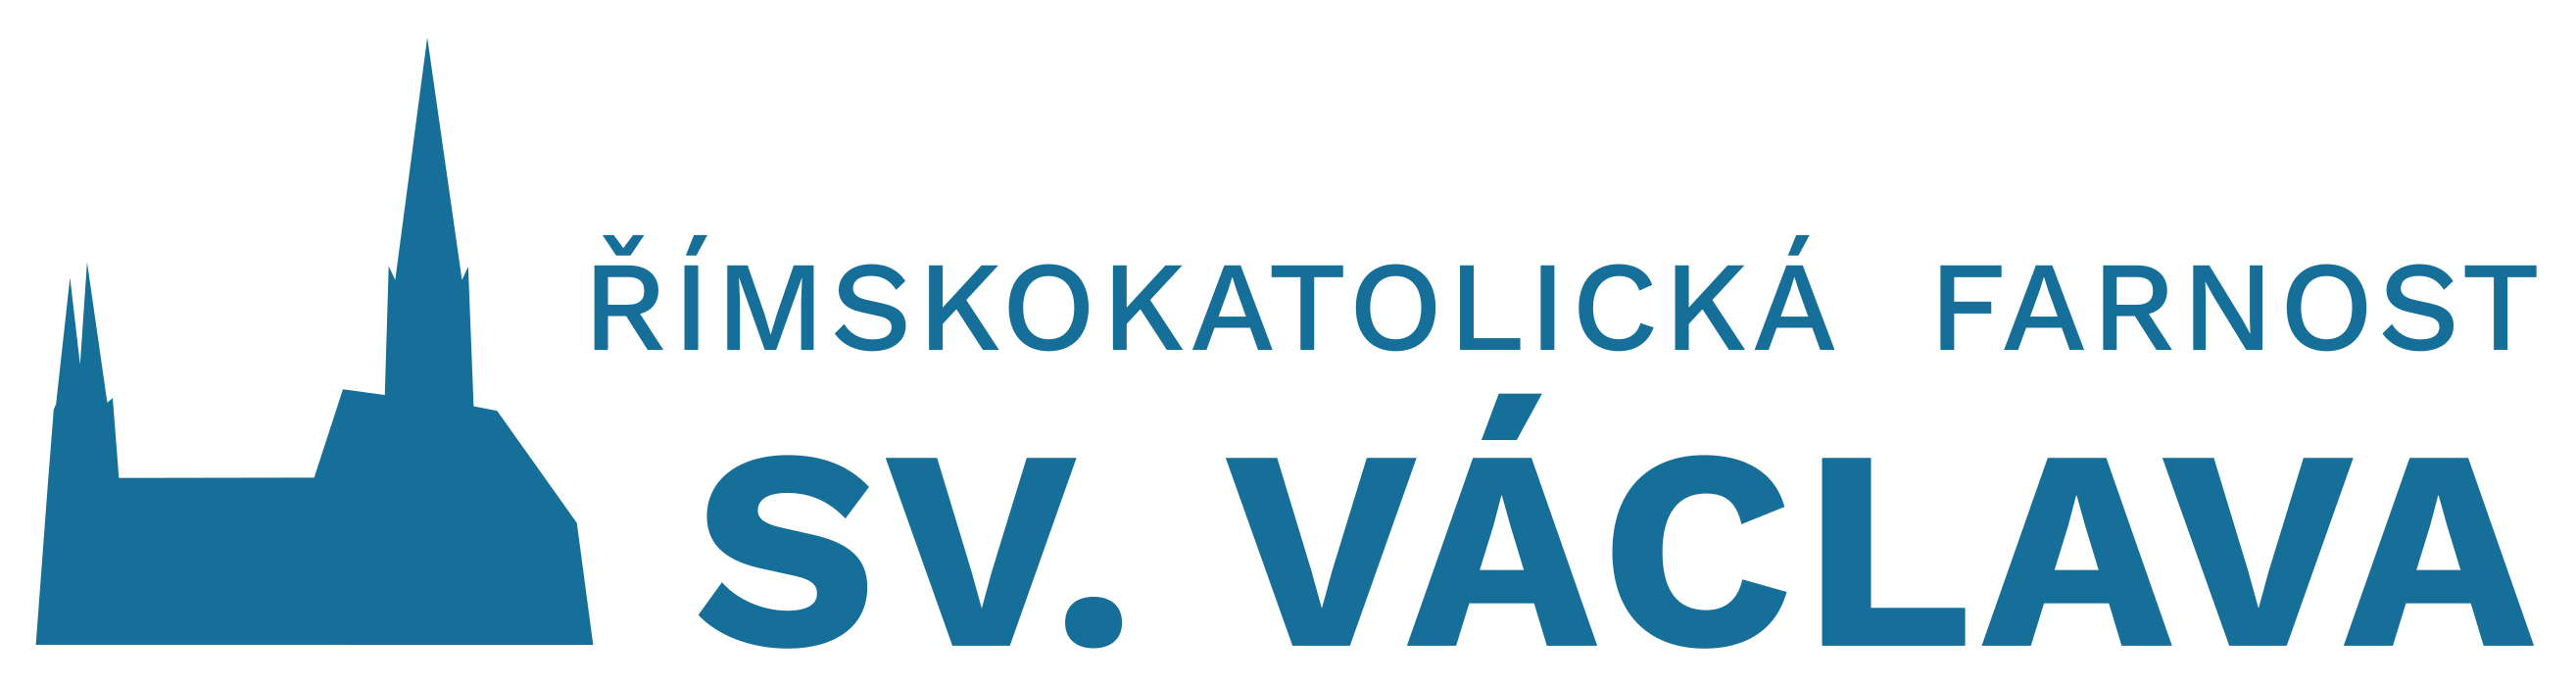 Logo Stránku pro Vás připravujeme - Římskokatolická farnost svatého Václava Olomouc